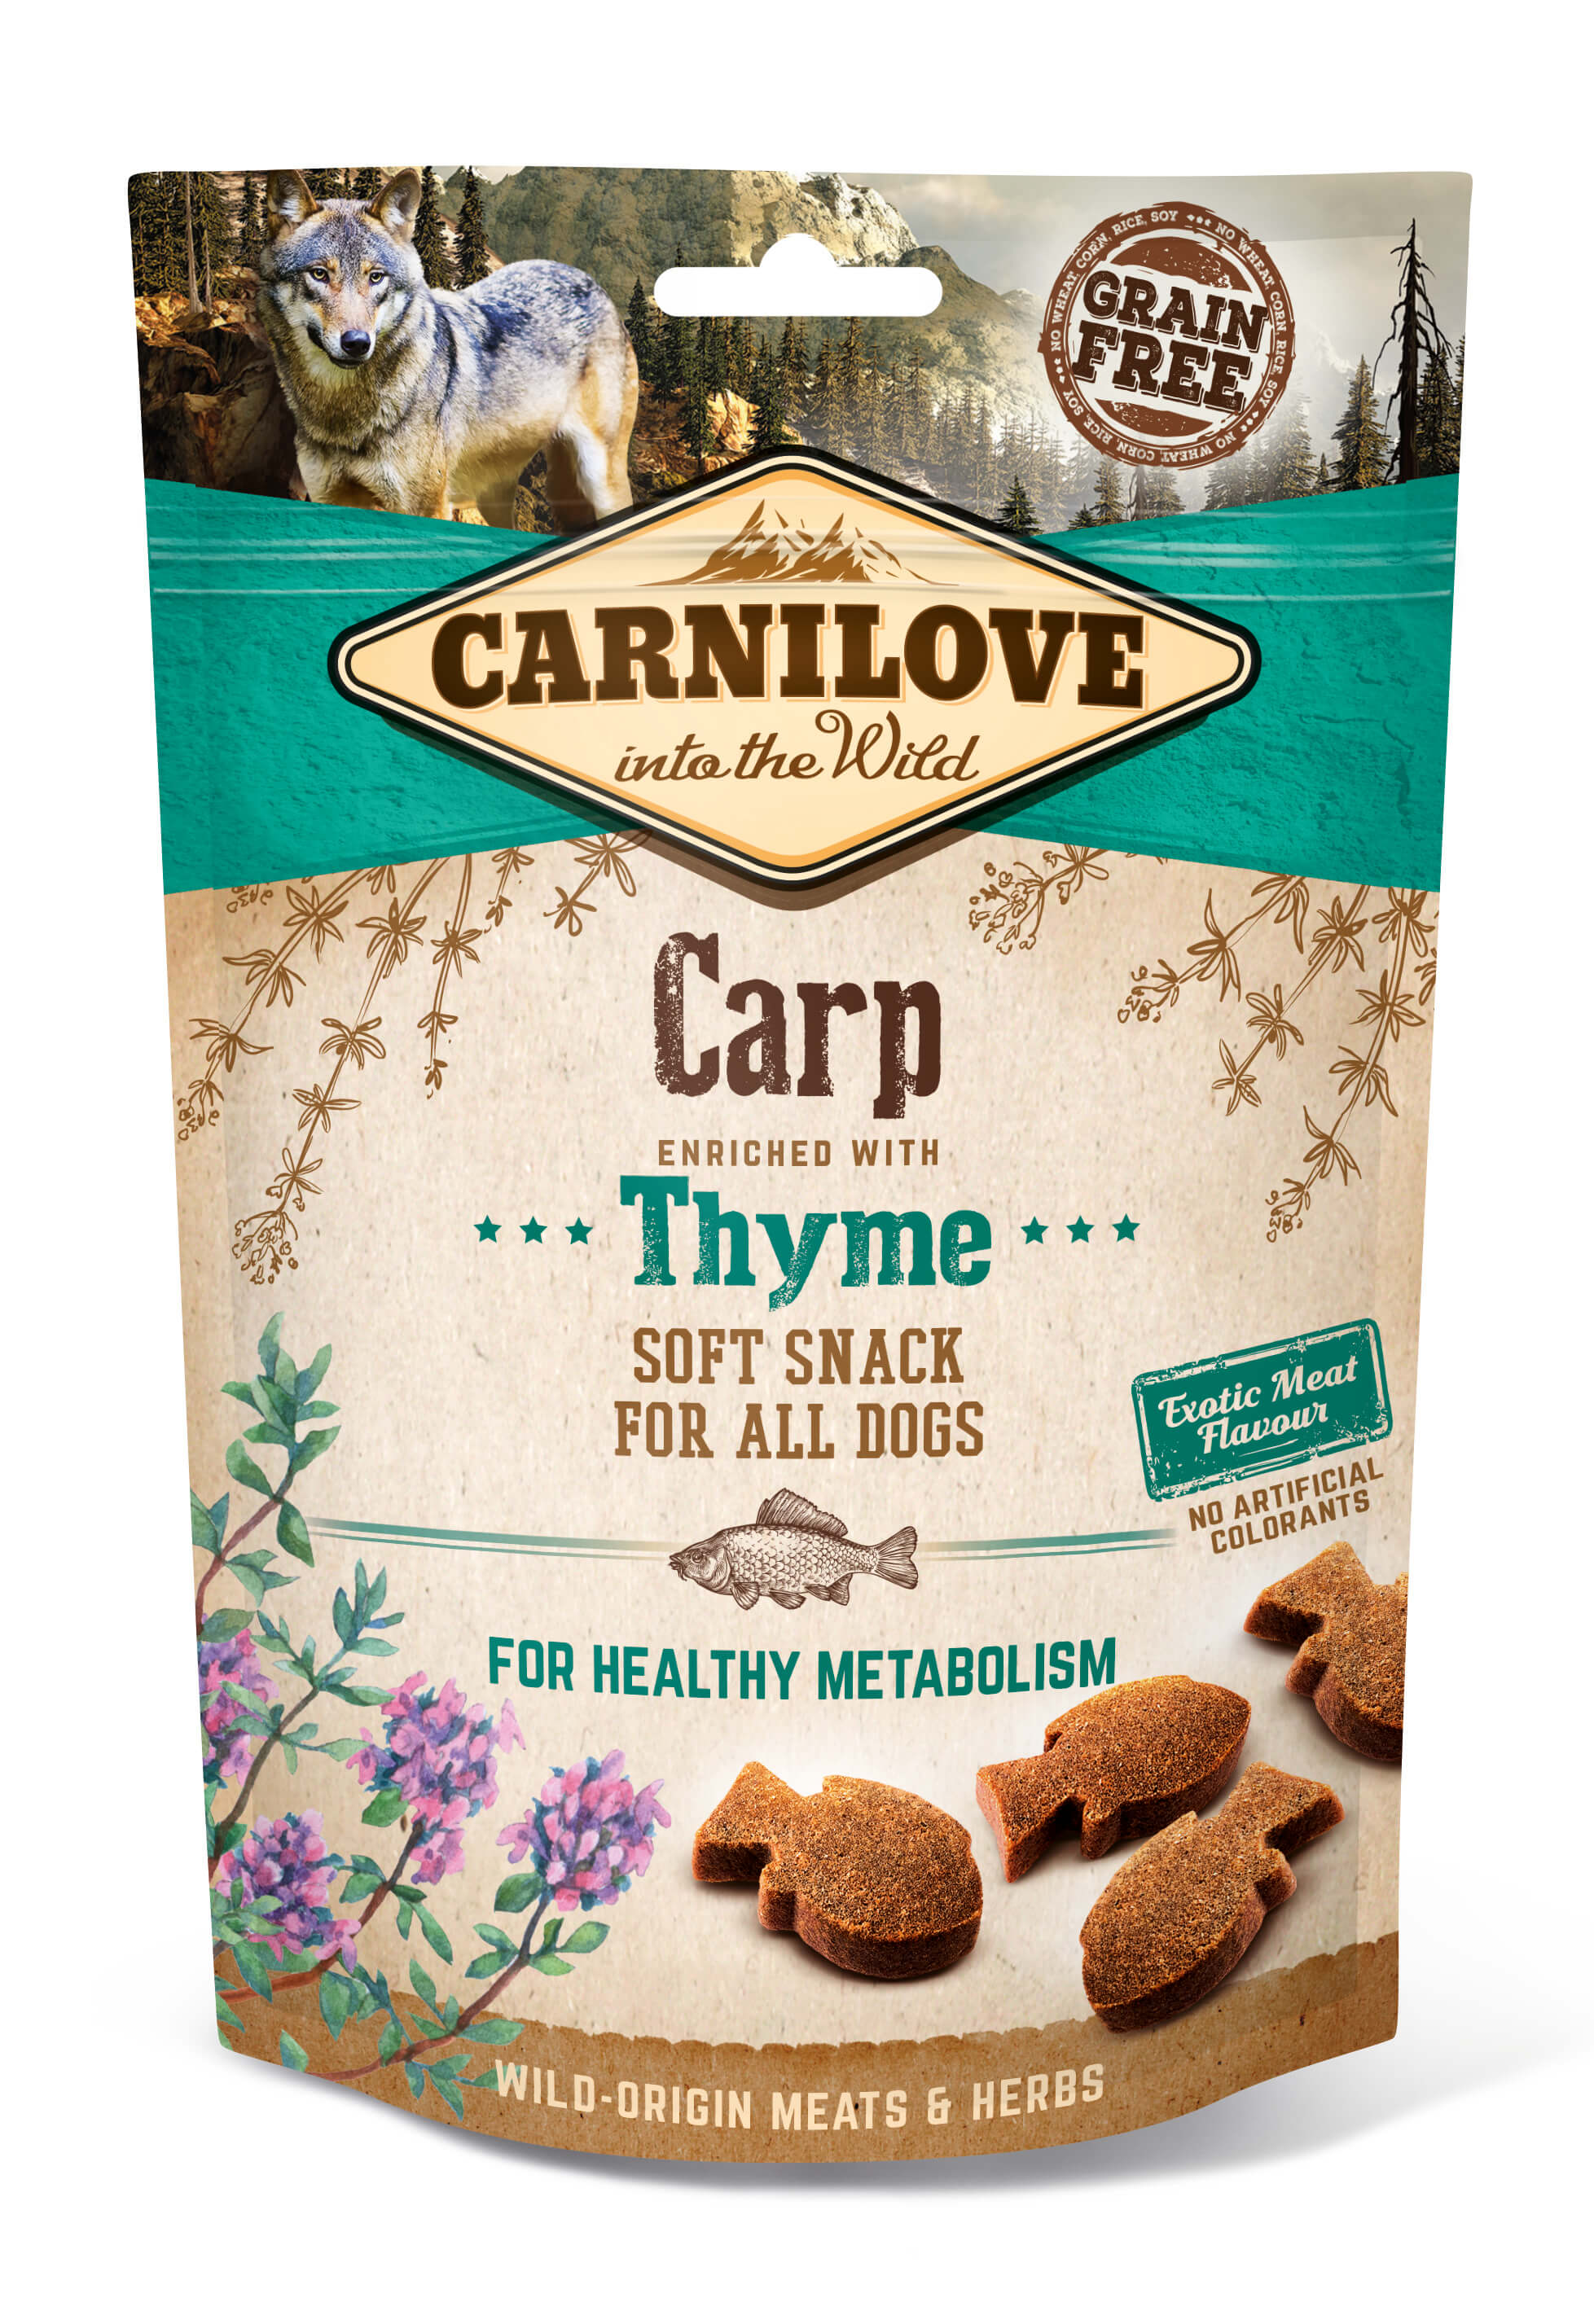 Artikel mit dem Namen Carnilove Dog Soft Snack - Karpfen im Shop von zoo.de , dem Onlineshop für nachhaltiges Hundefutter und Katzenfutter.